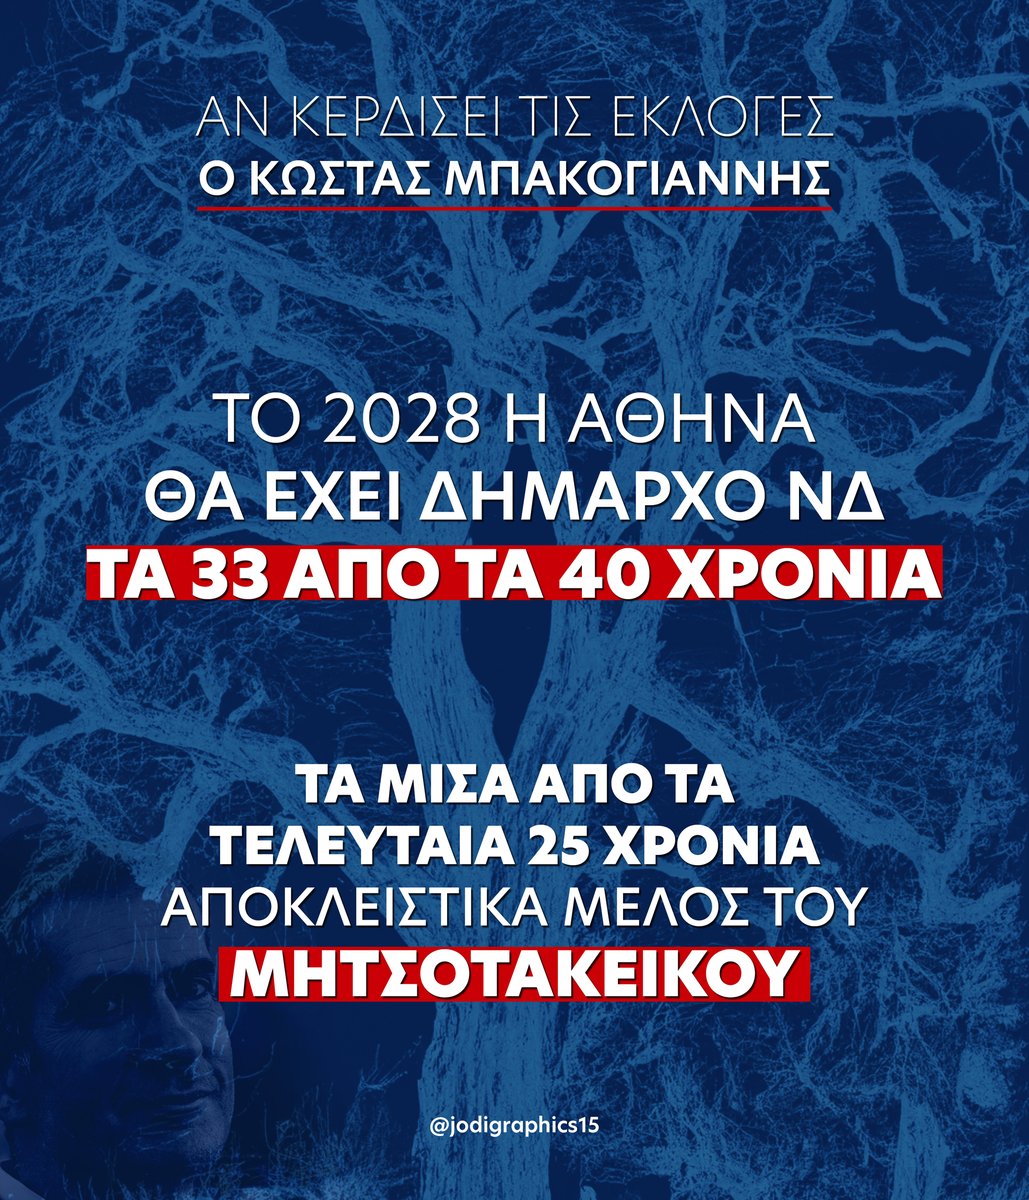 Δήμος Αθηναίων #ERTDEBATE 
#Μητσοτακέικο